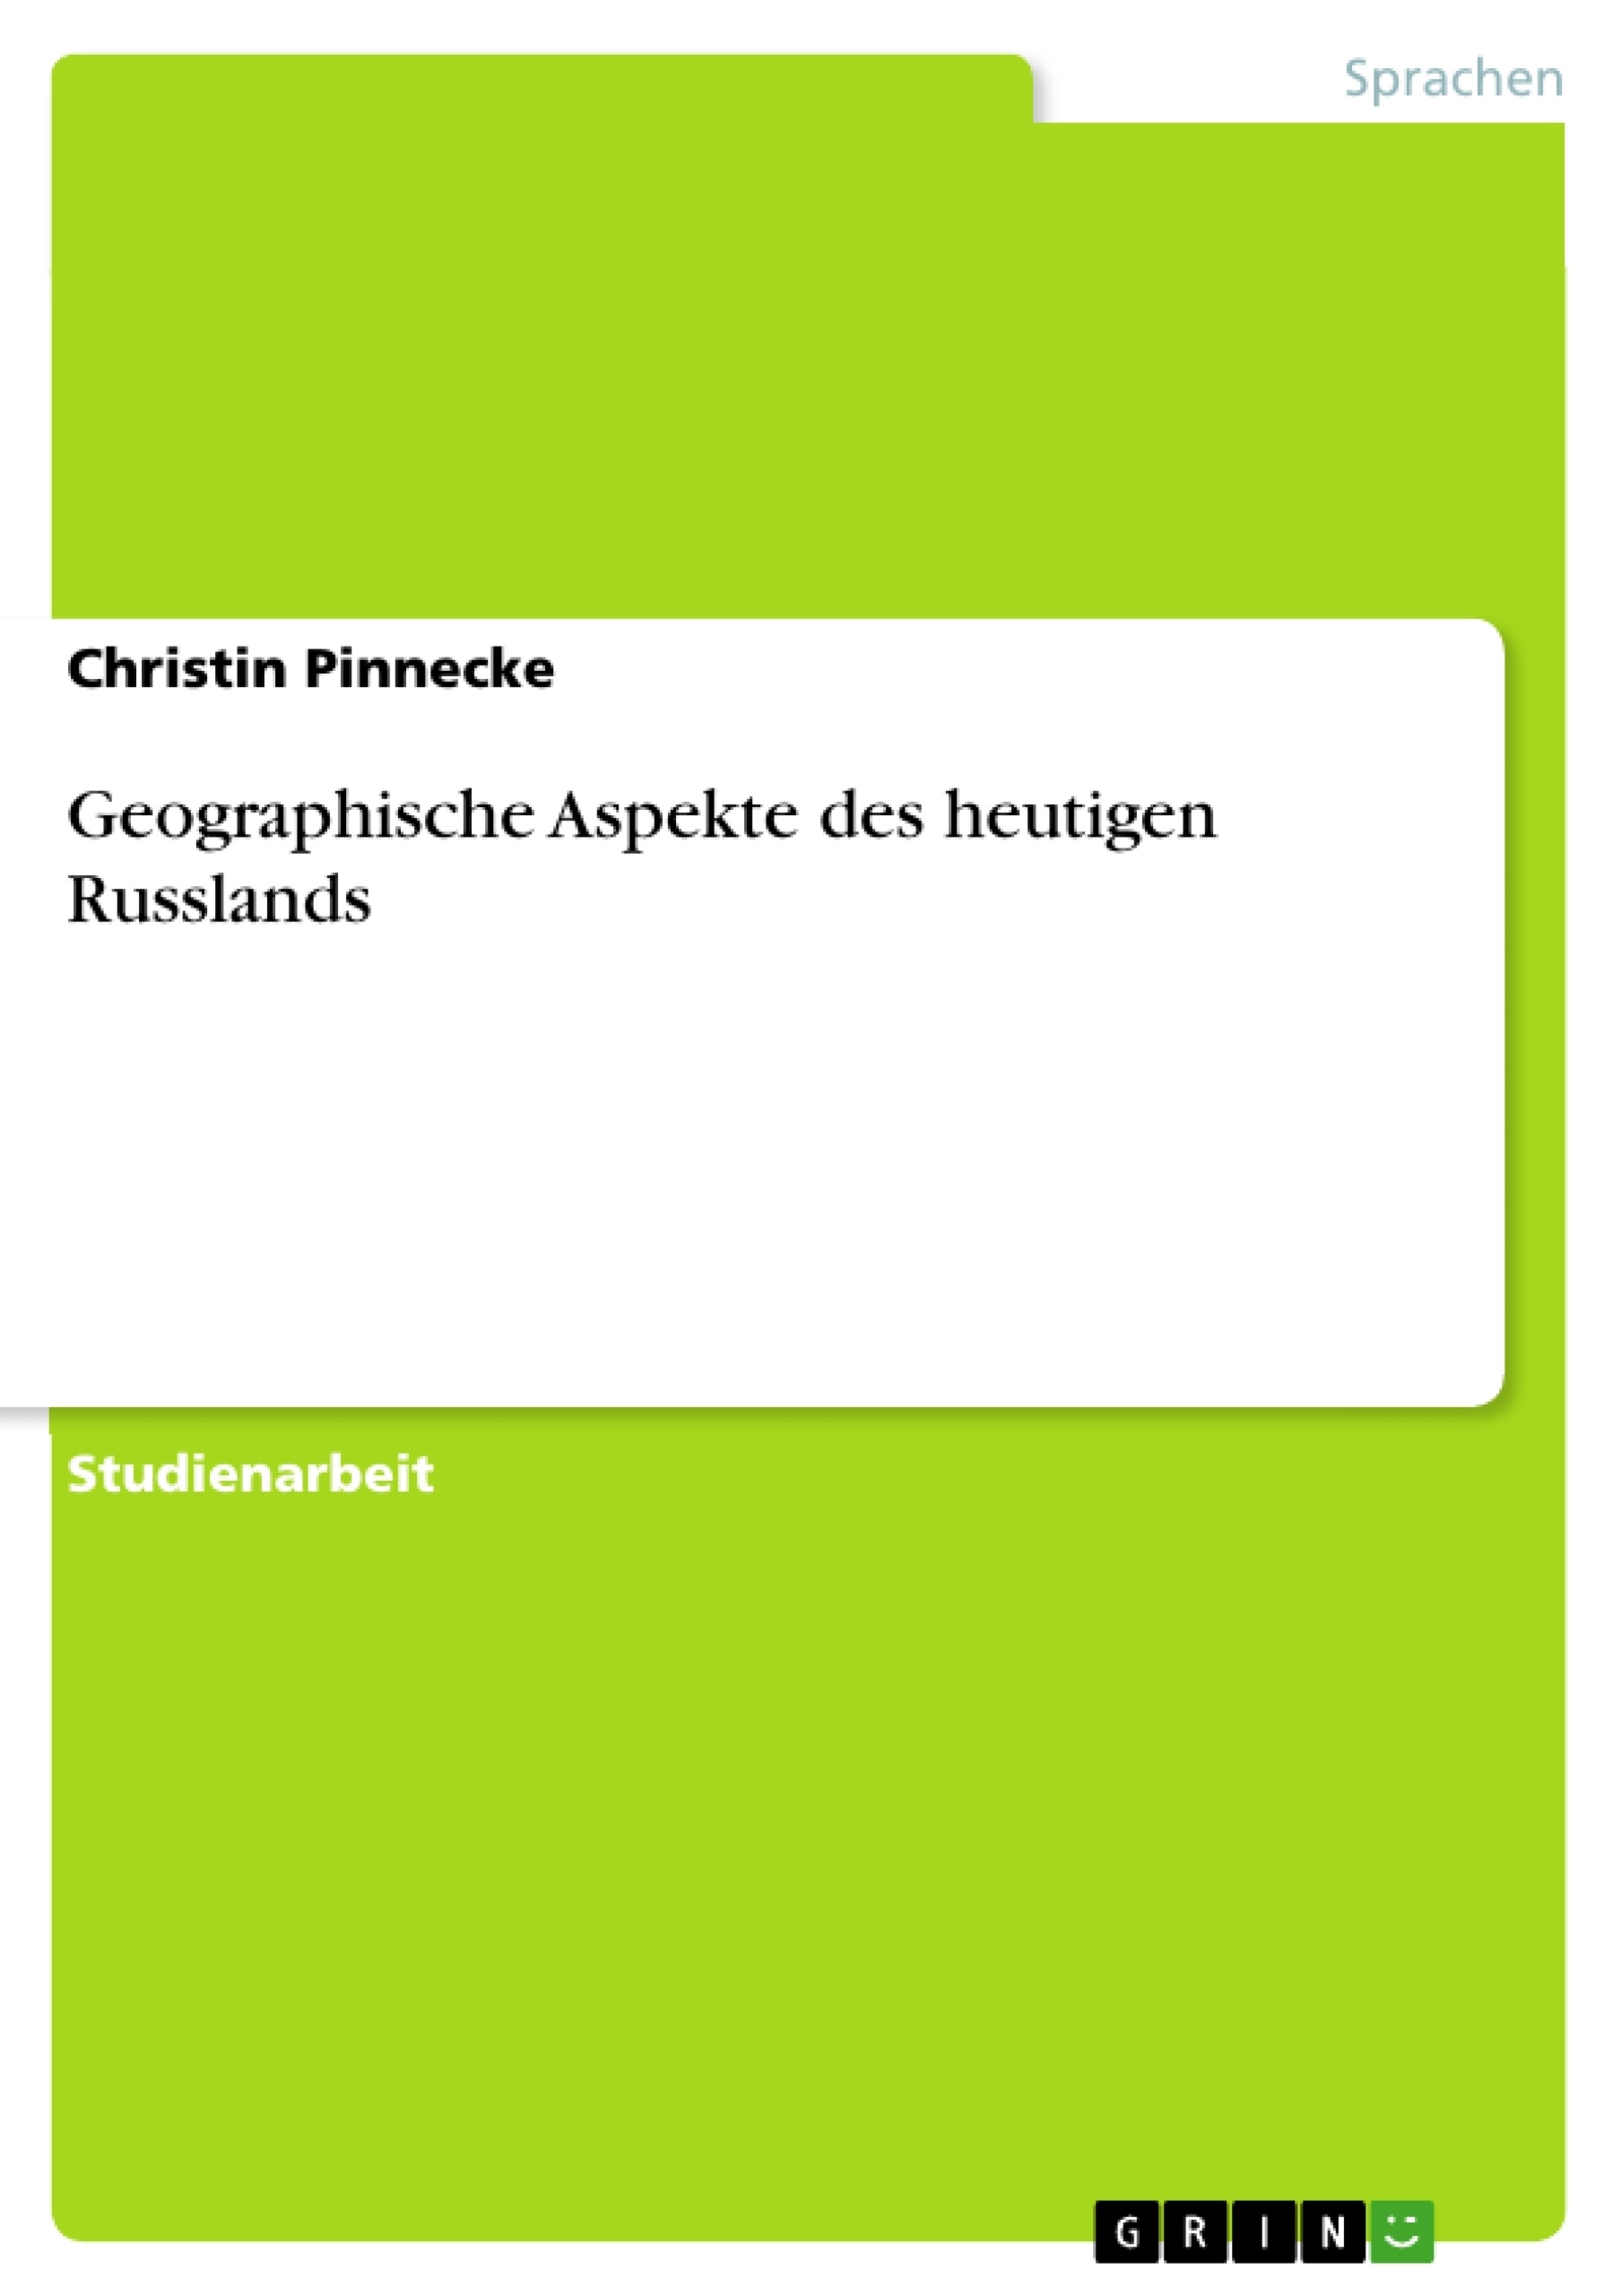 Title: Geographische Aspekte des heutigen Russlands